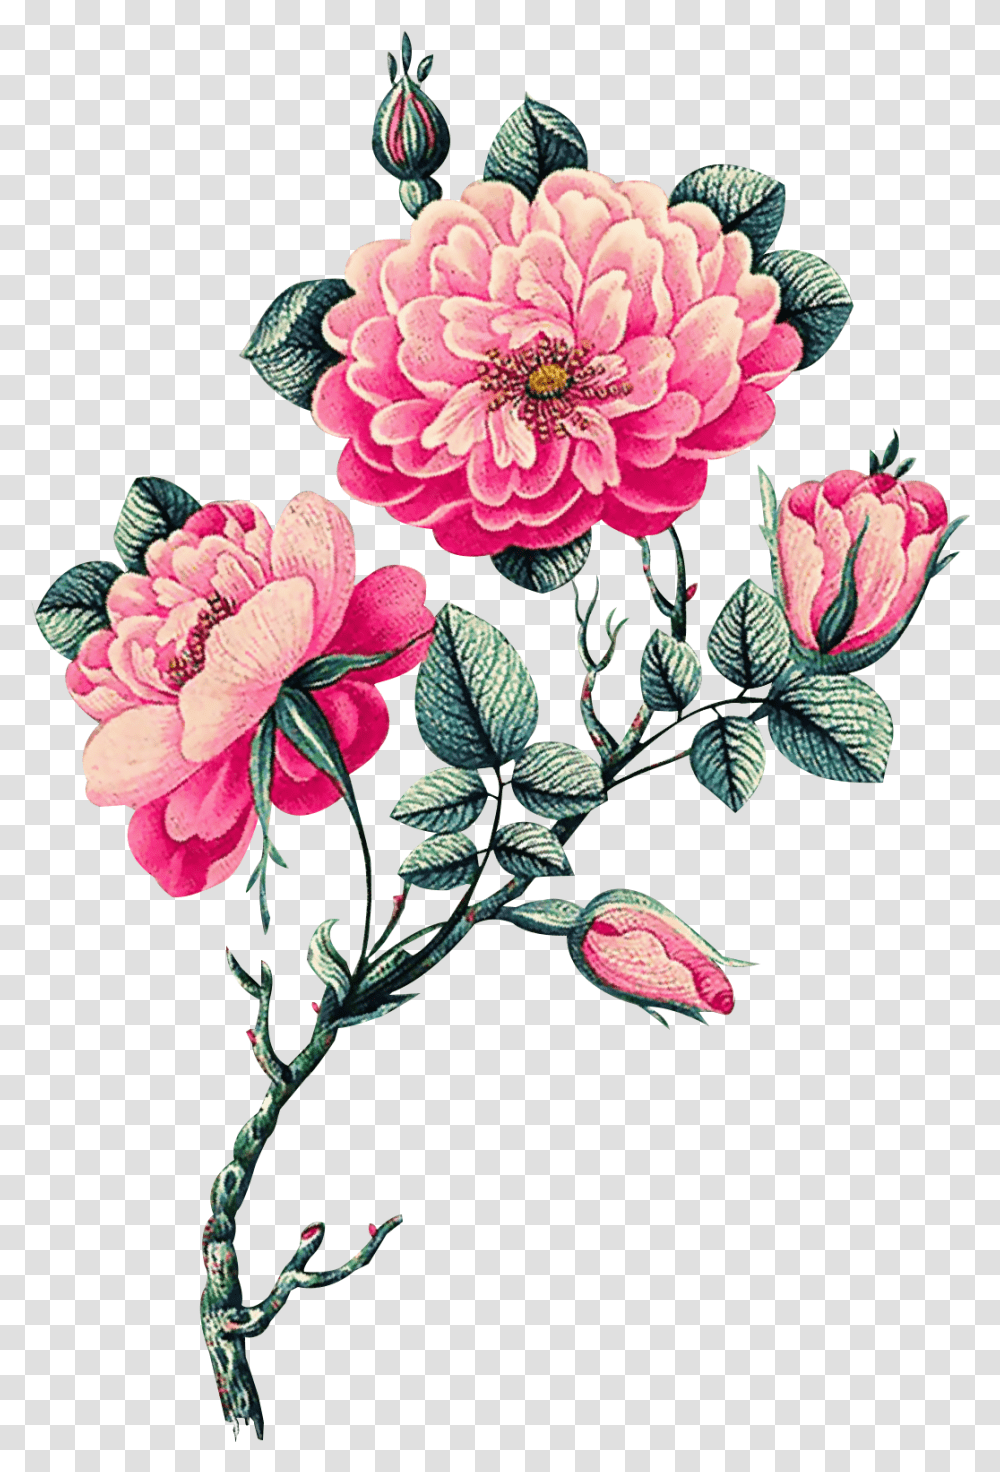 Download Pink Vector Flowers Vector Flower, Floral Design, Pattern, Graphics, Art Transparent Png